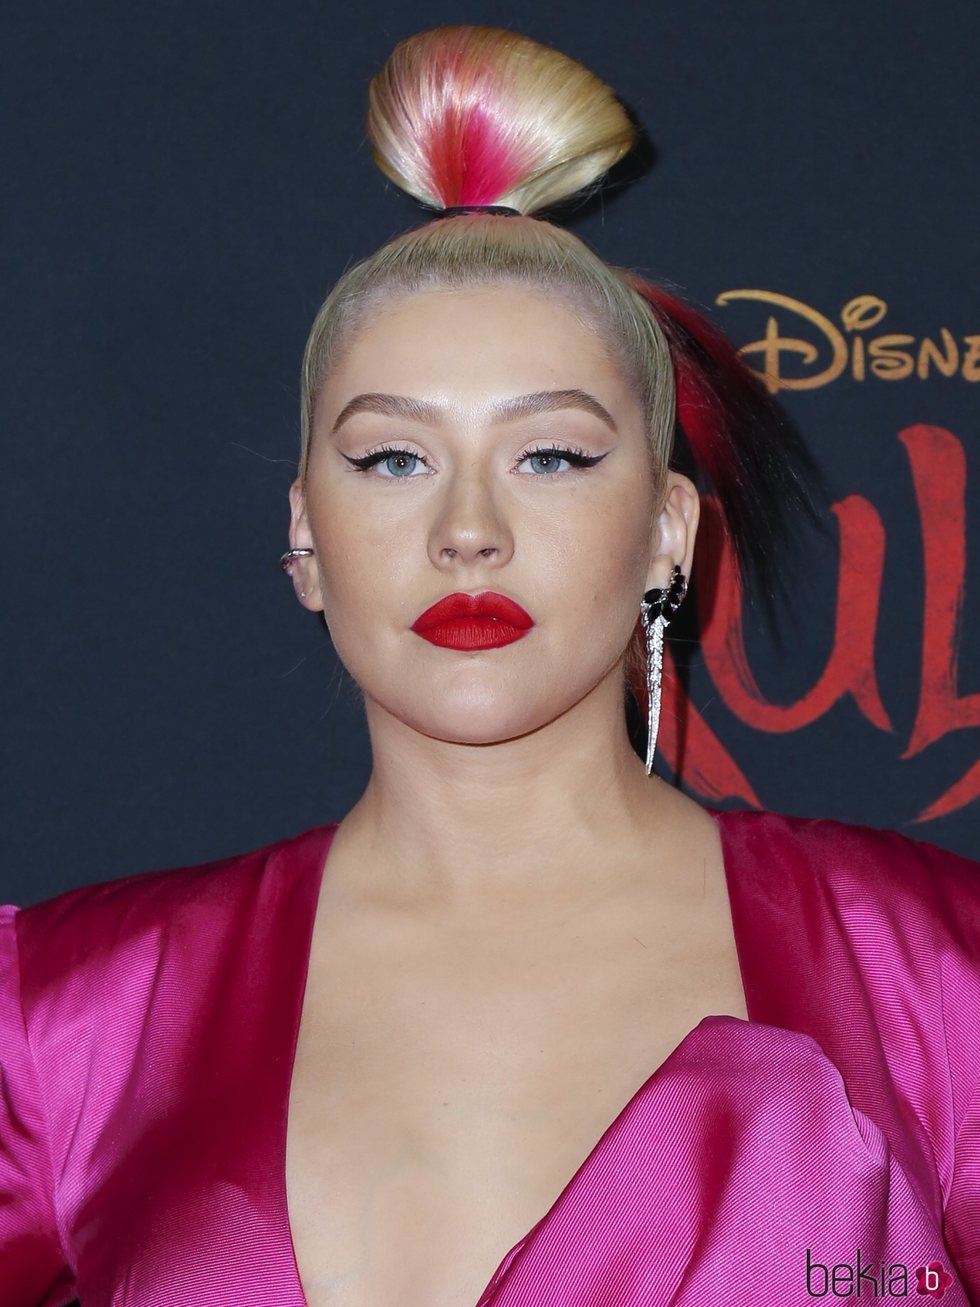 Christina Aguilera asiste a la presentación de la película Disney 'Mulán'